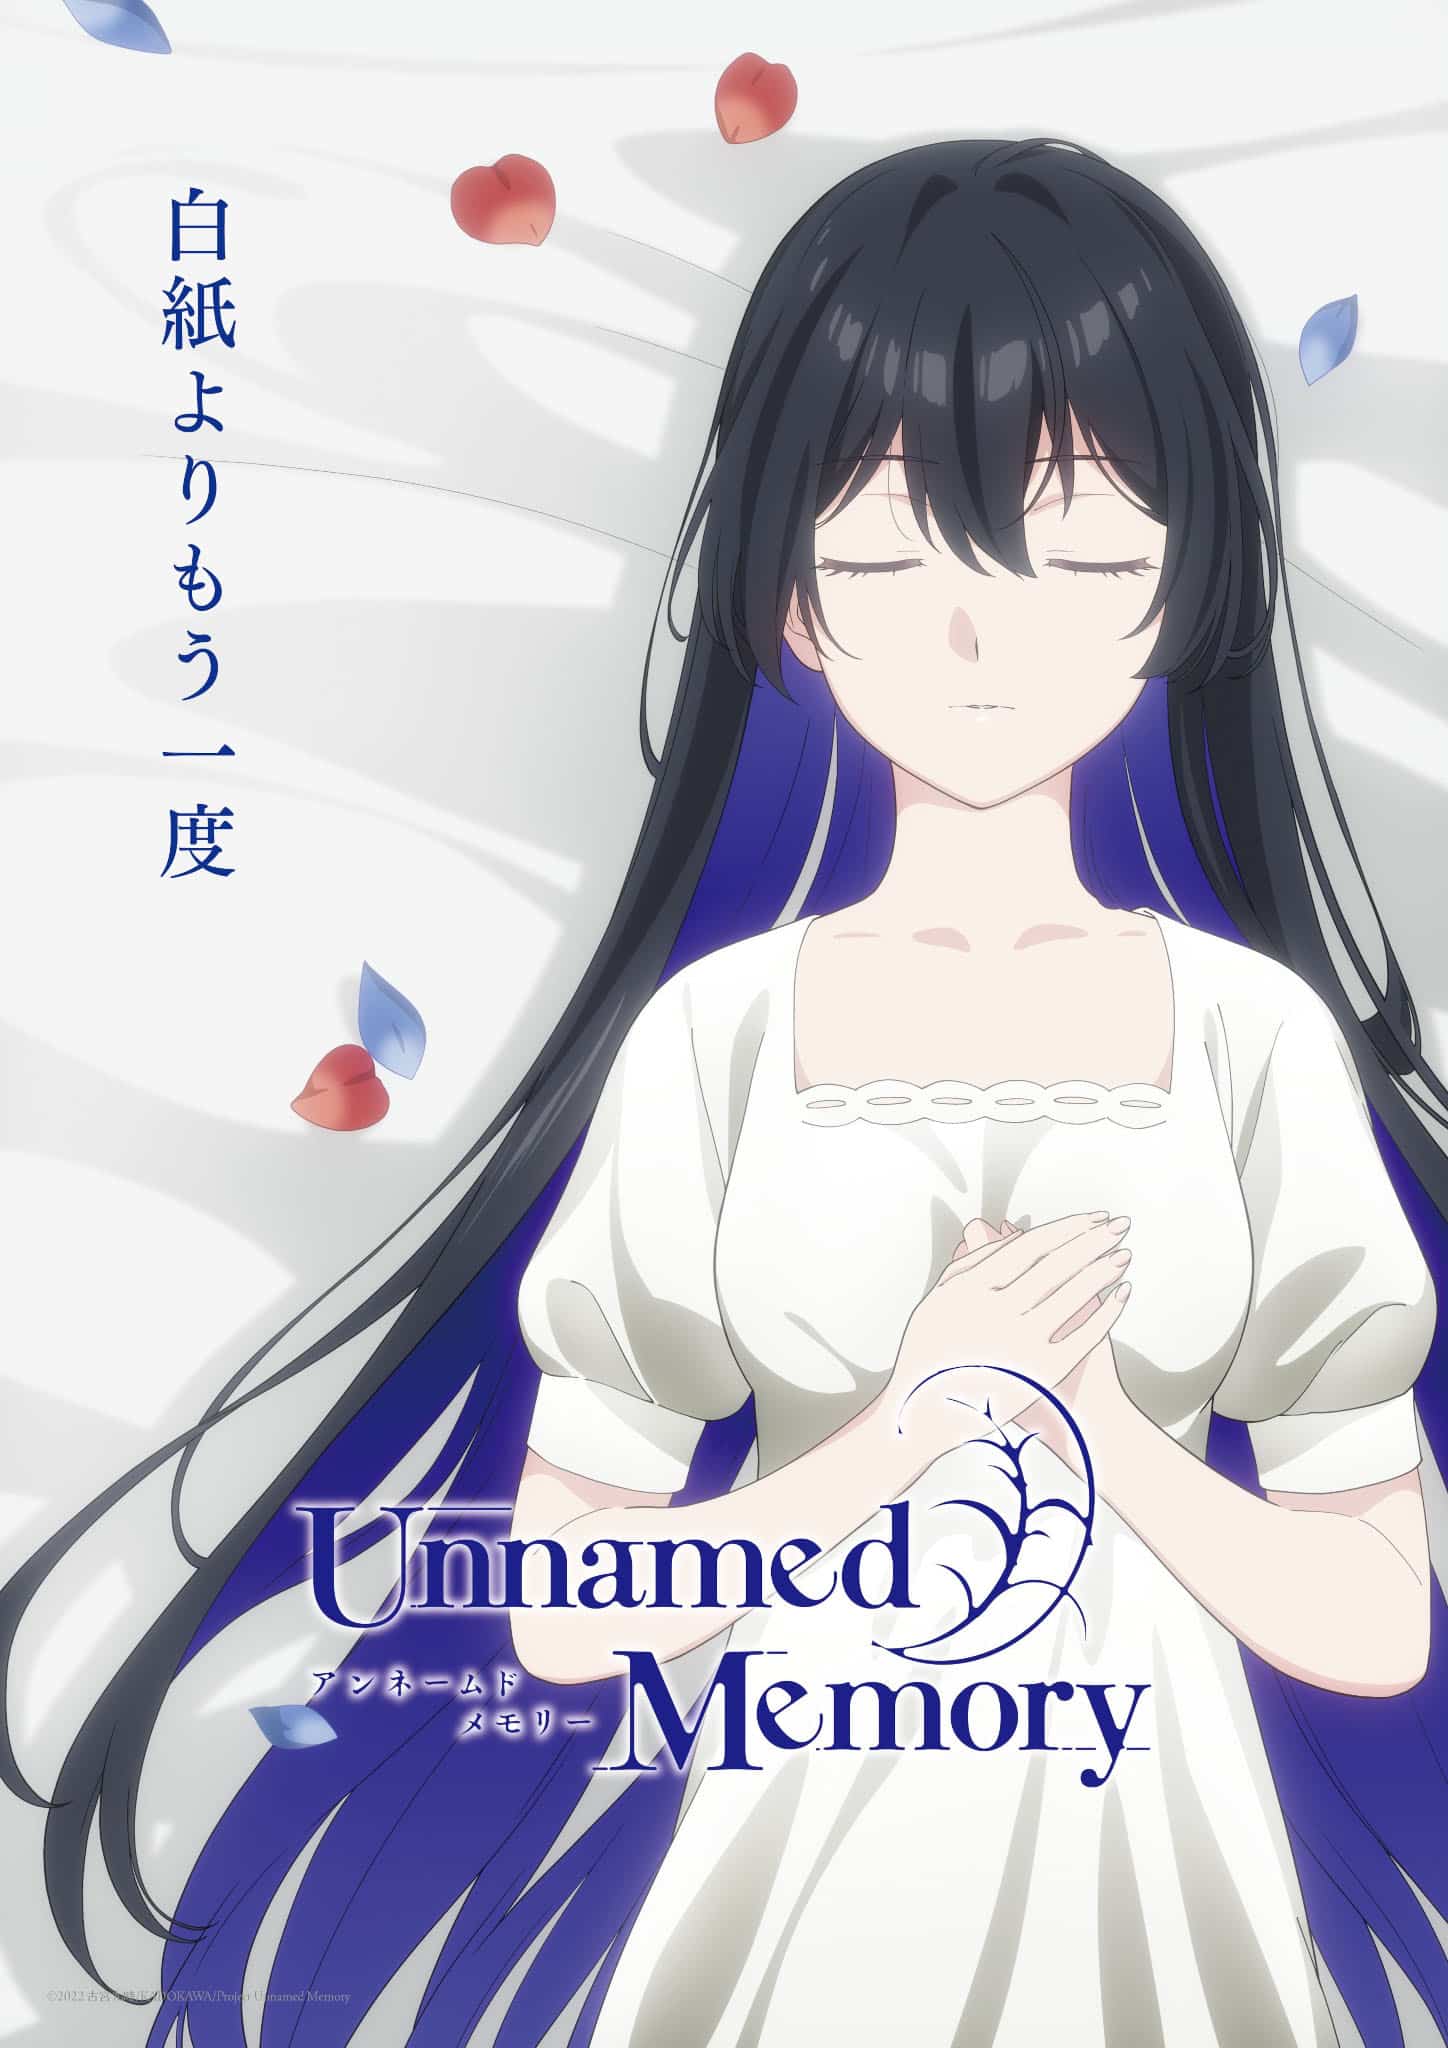 Premier visuel pour la saison 2 de l'anime Unnamed Memory.